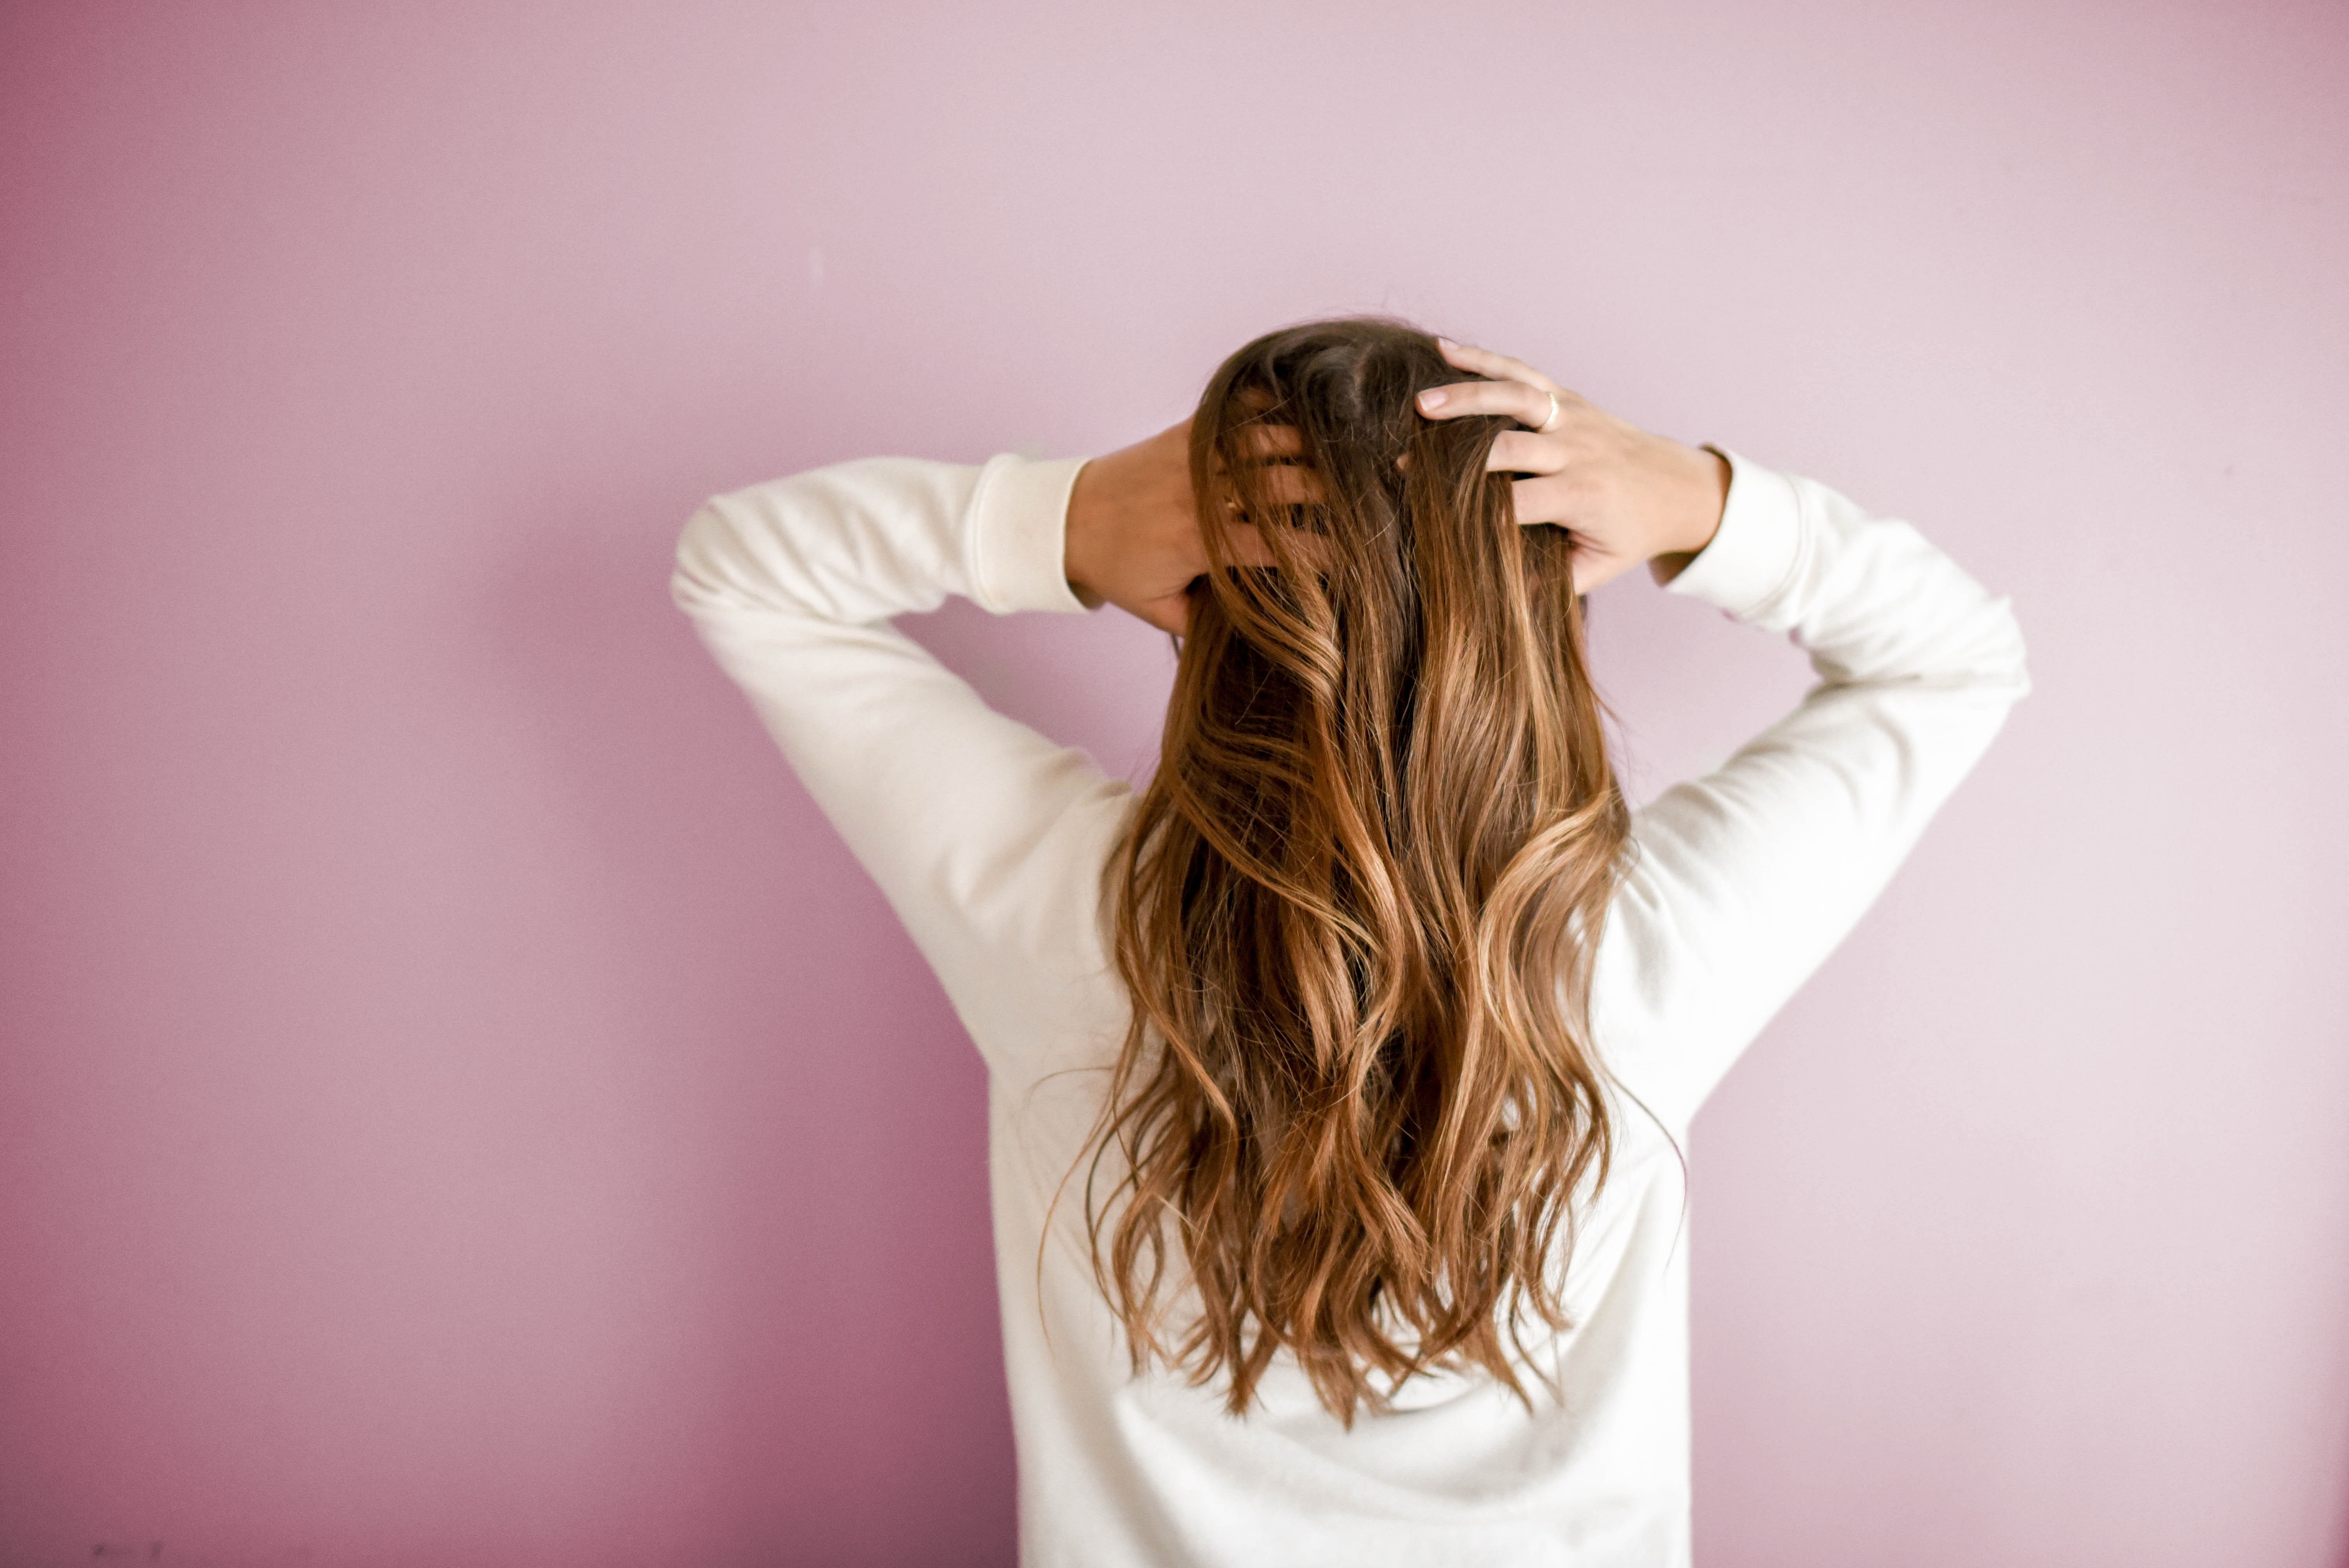 VÍDEO | Cómo cortarse el pelo en casa de manera fácil y sencilla